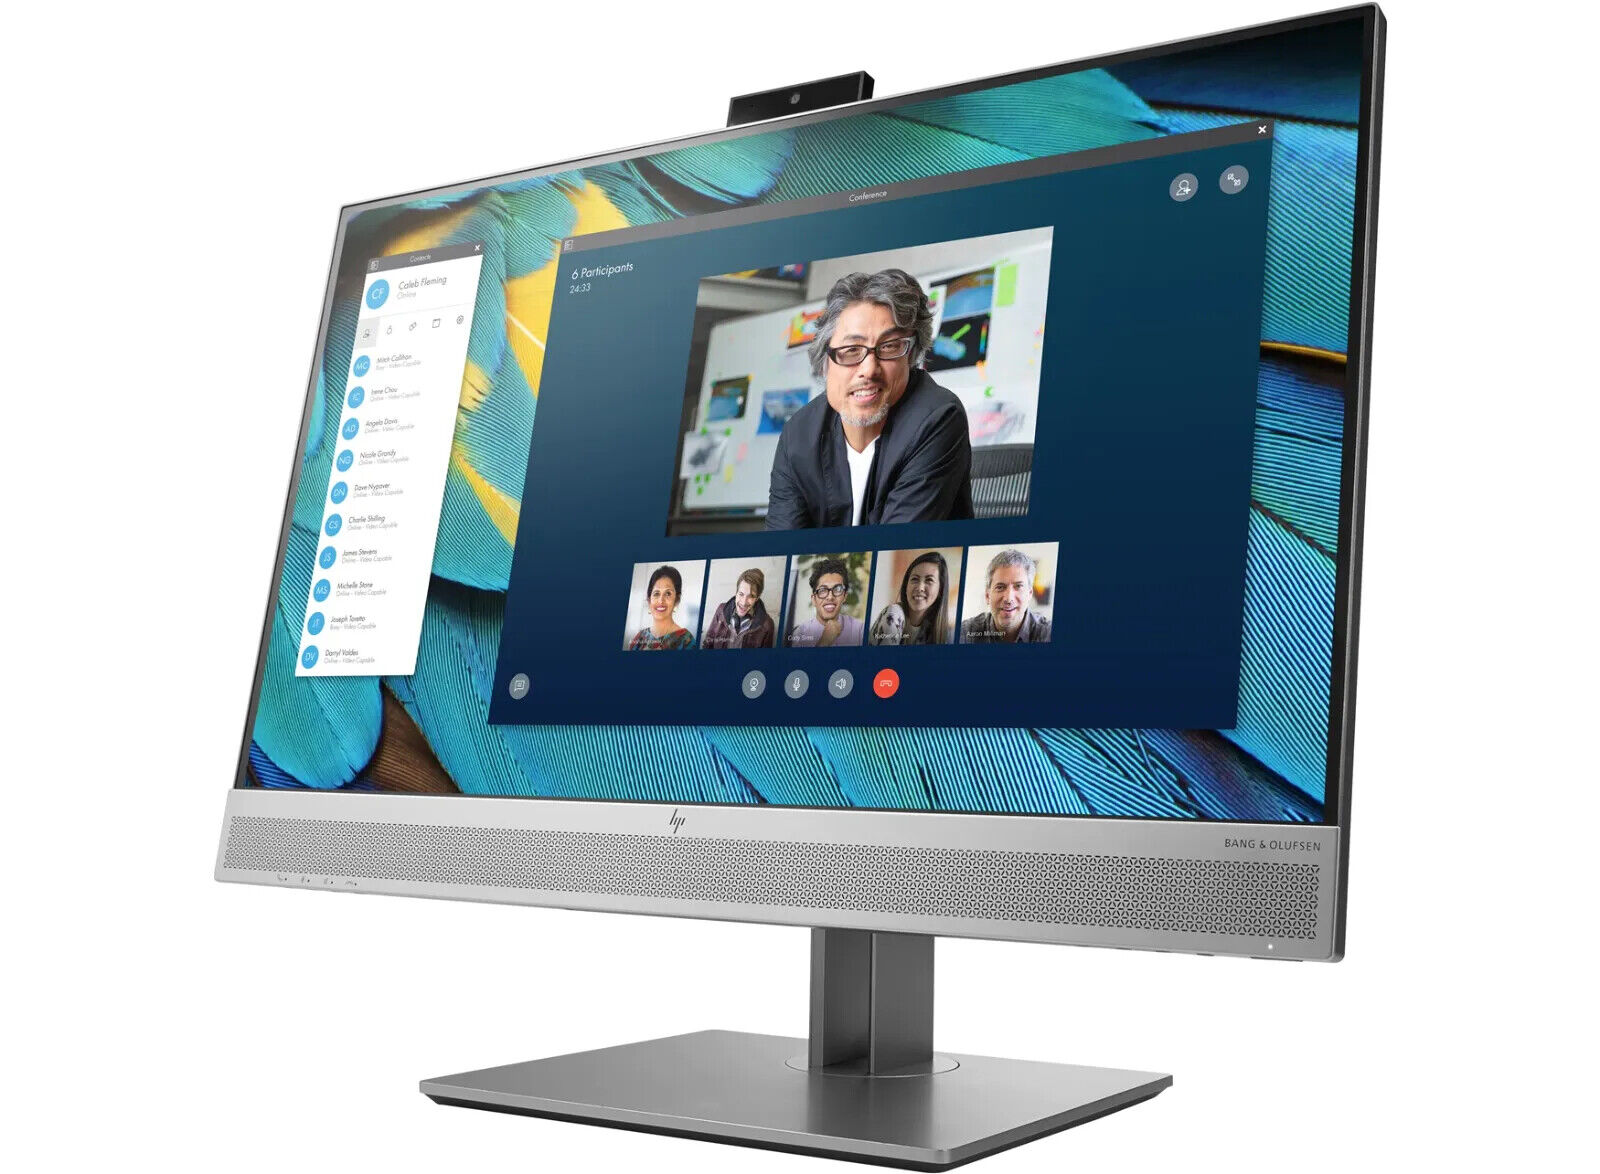 HP-EliteDisplay-E243m-238-IPS-LED-Monitor-with-Pop-up-Webcam-Audio-165345694697